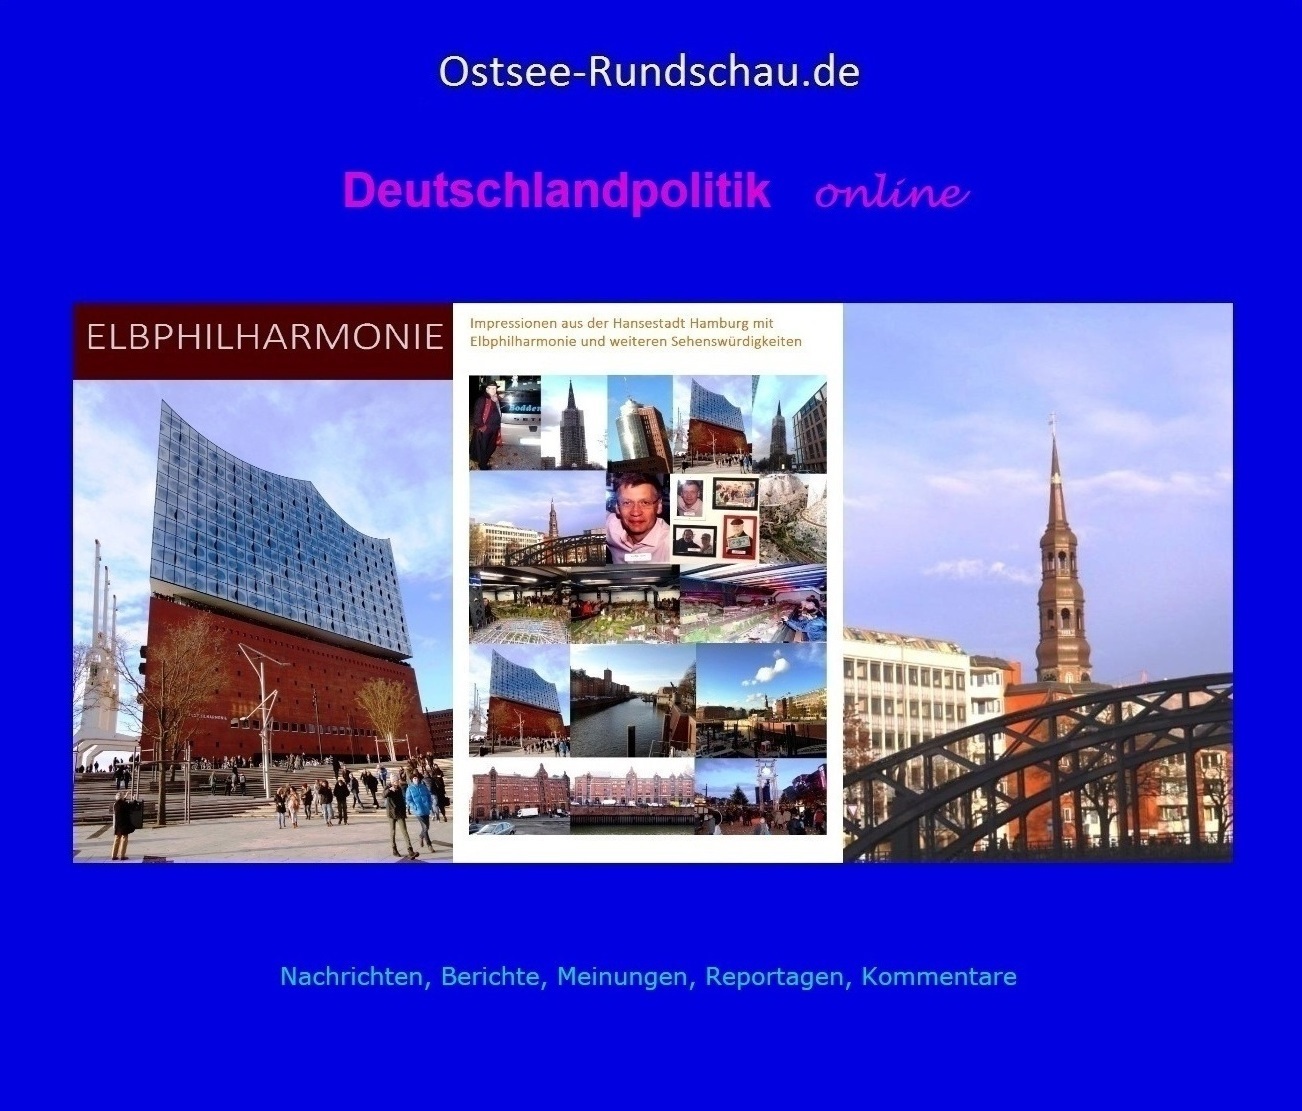 Deutschlandpolitik online der Neuen Unabhängigen Onlinezeitungen (NUOZ) Ostsee-Rundschau.de